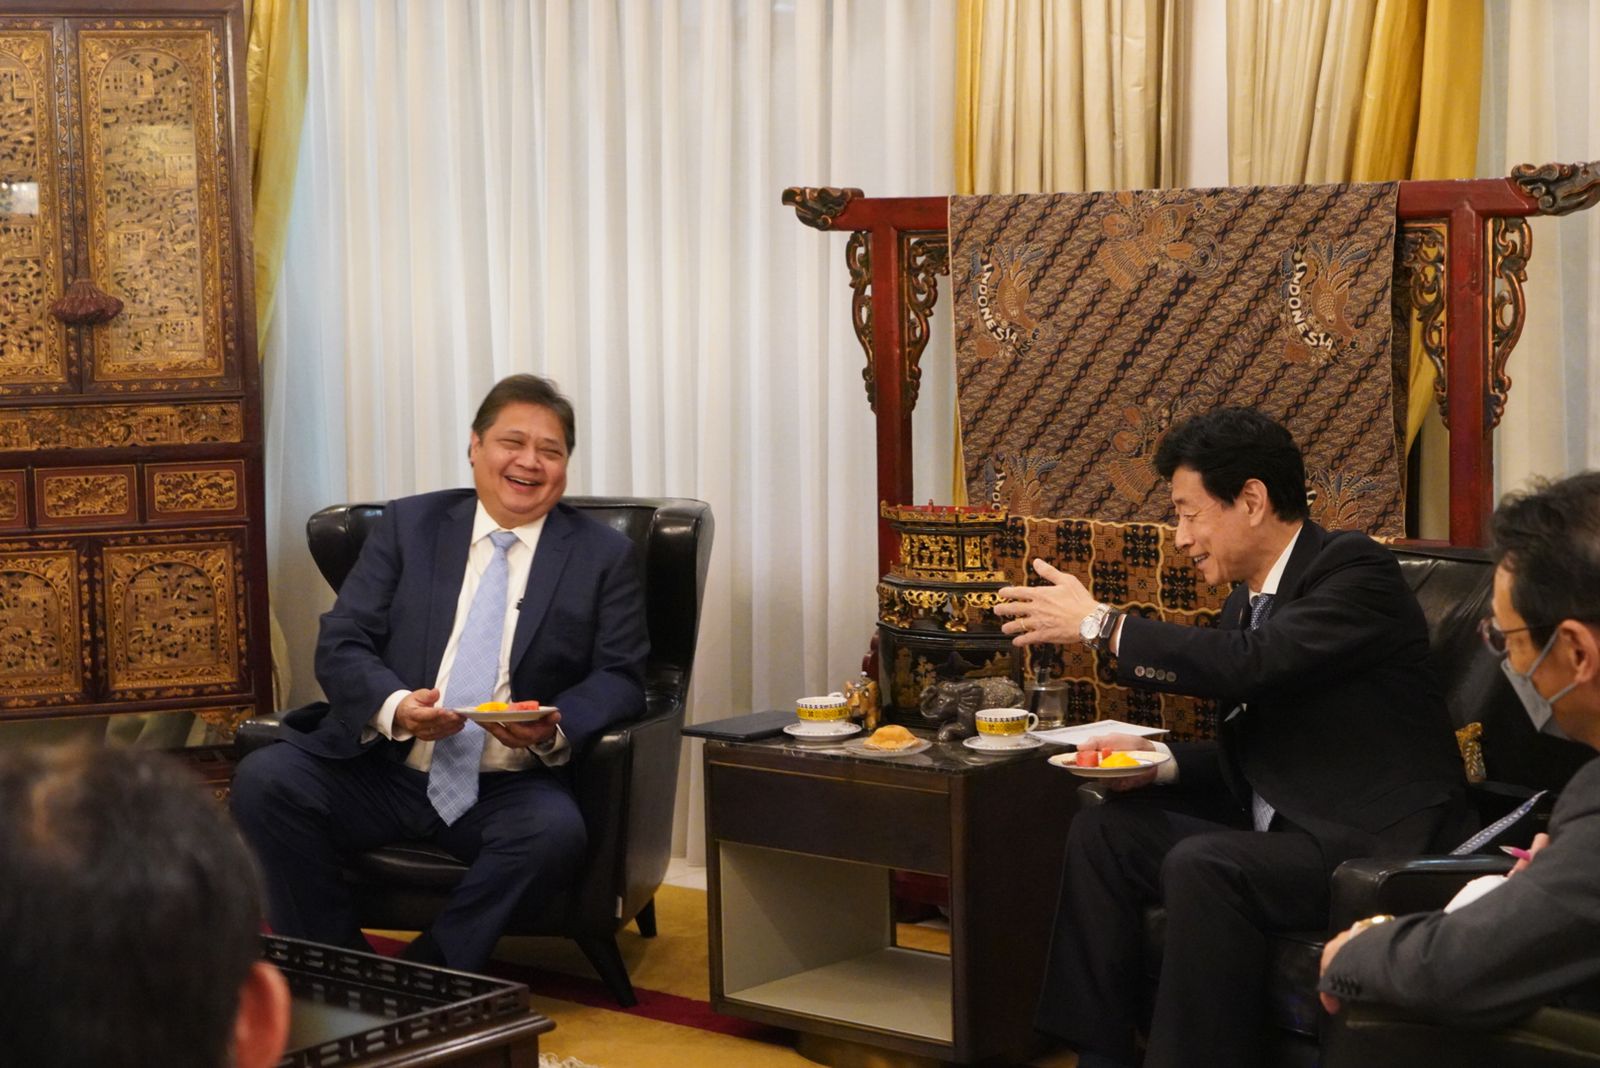 Menteri METI Jepang Kunjungi Menko Airlangga dan Bahas Kerja Sama Perdagangan, Investasi, IPEF hingga KTT G20 